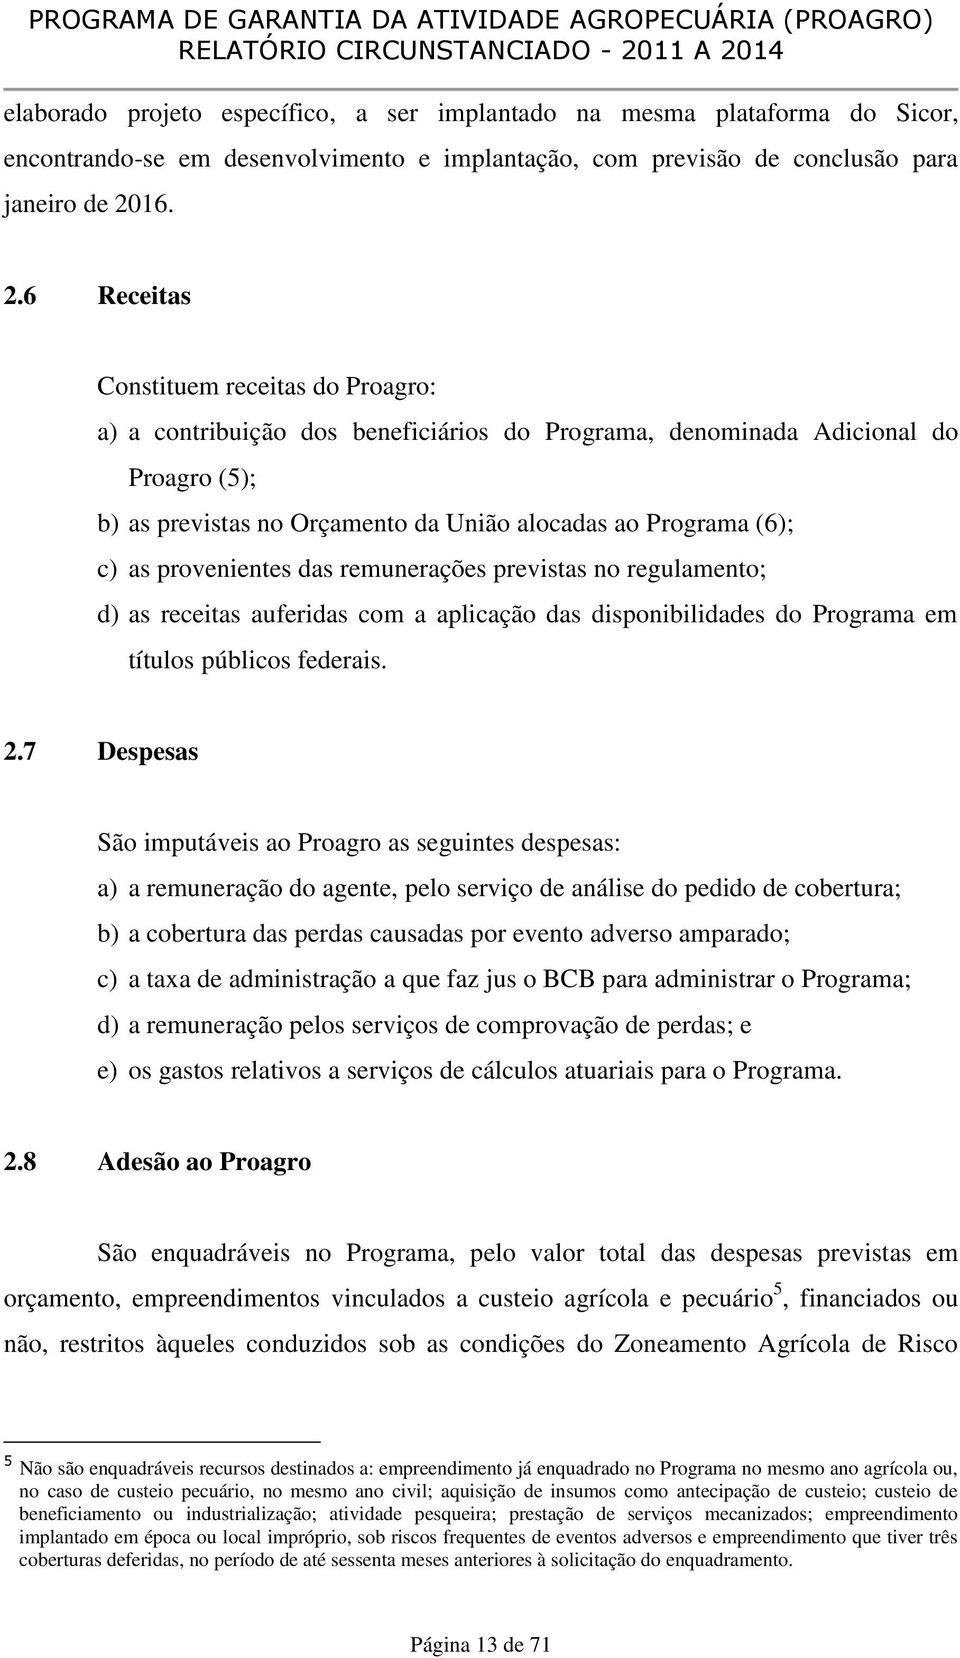 6 Receitas Constituem receitas do Proagro: a) a contribuição dos beneficiários do Programa, denominada Adicional do Proagro (5); b) as previstas no Orçamento da União alocadas ao Programa (6); c) as